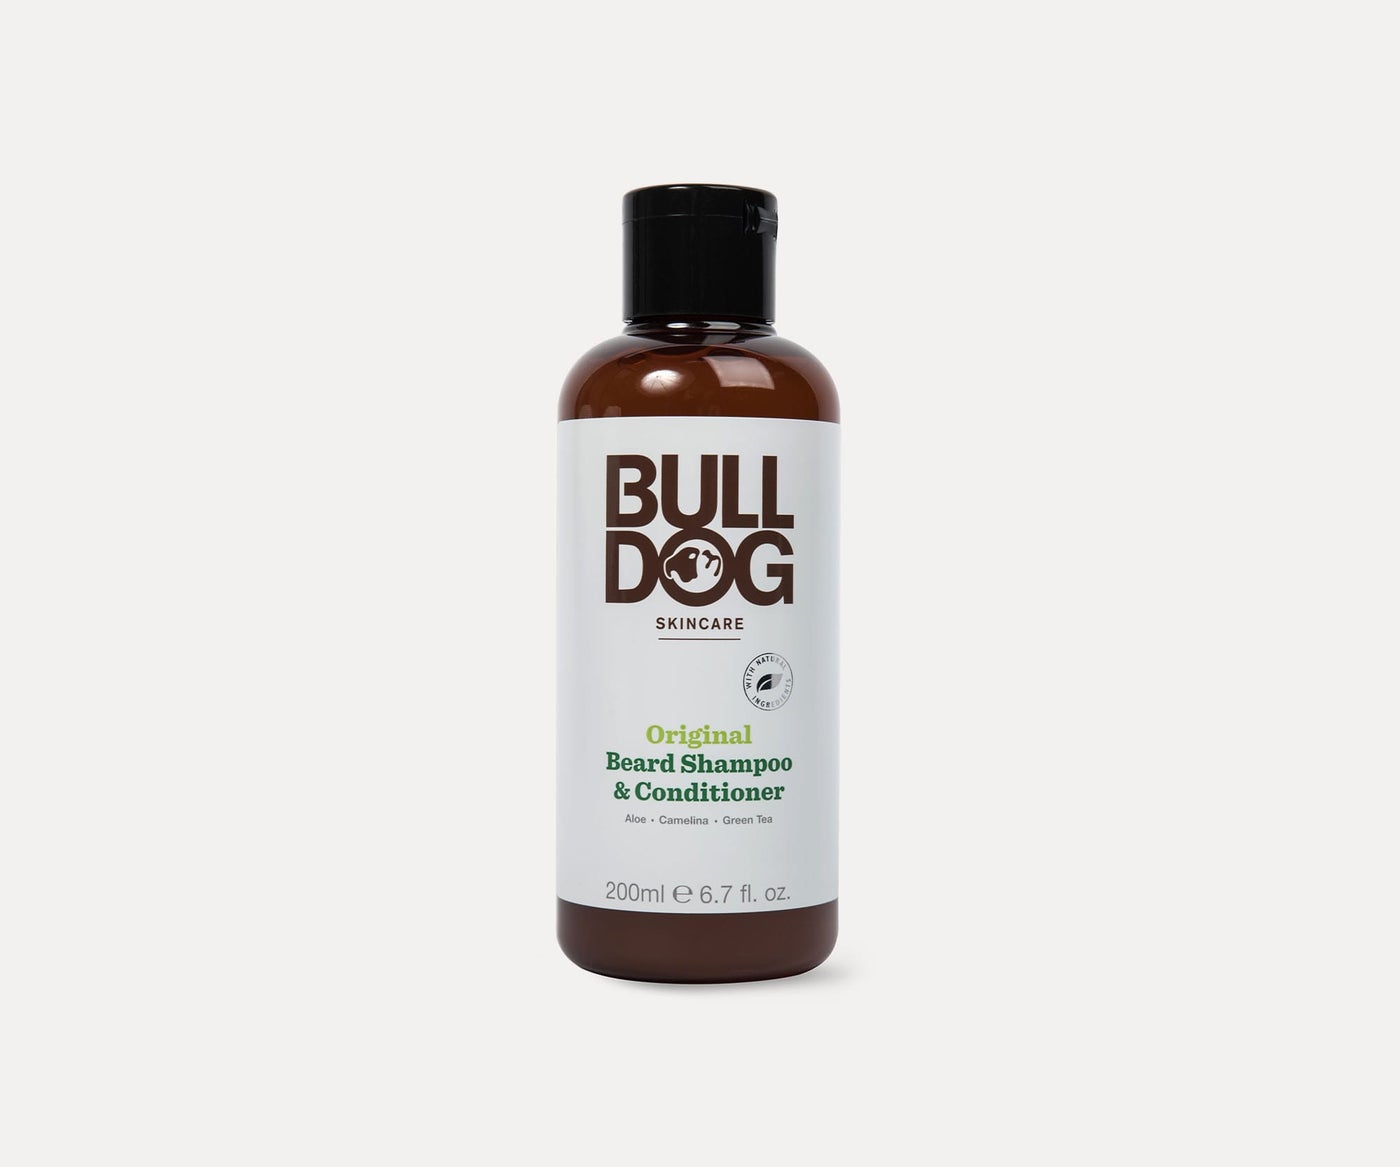 bulldog skincare review